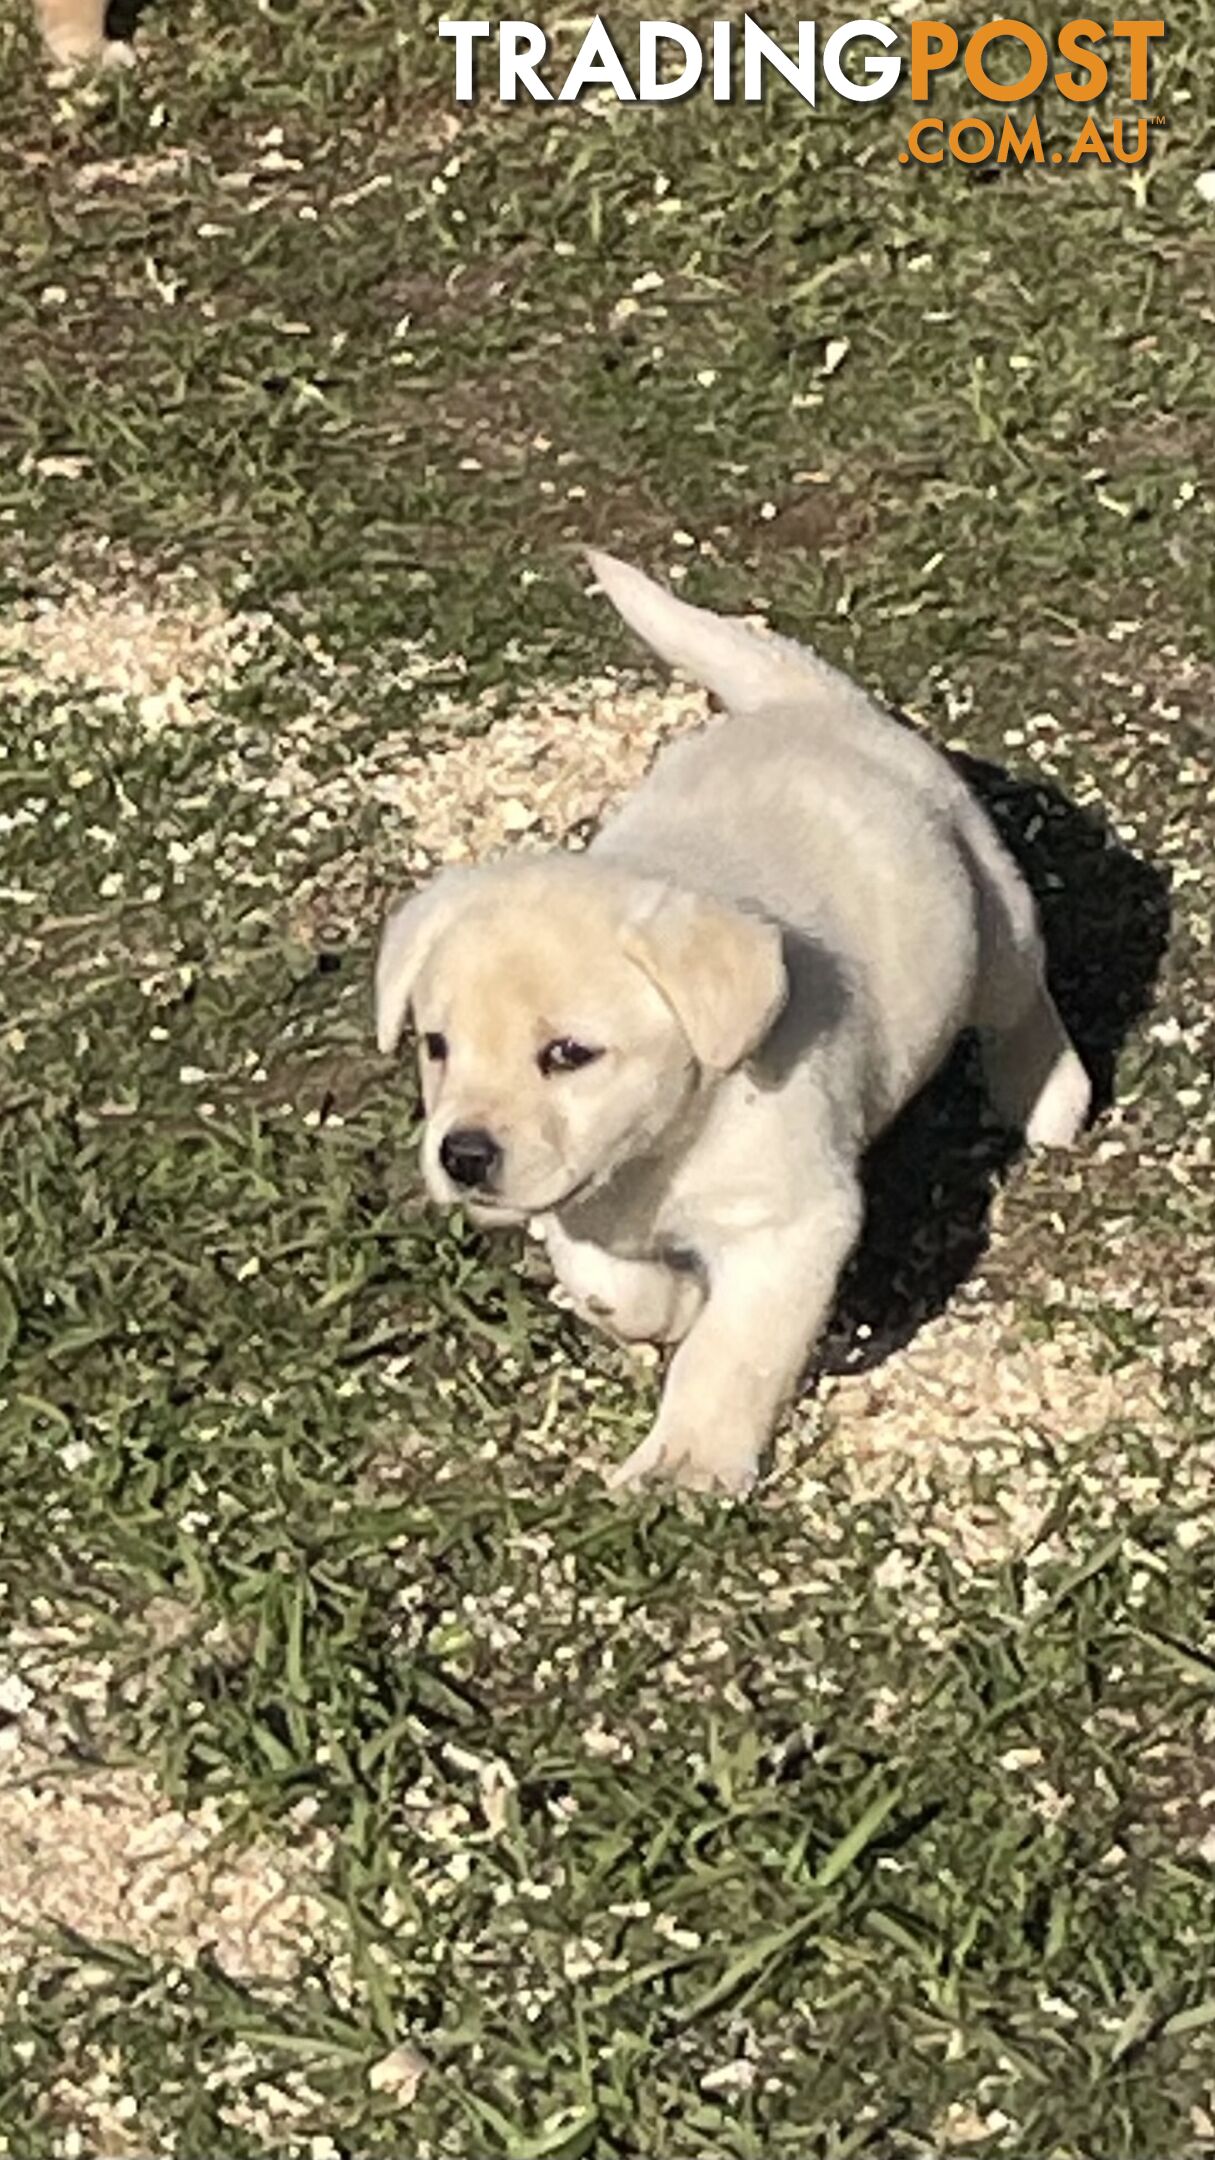 Adorable Labrador pup